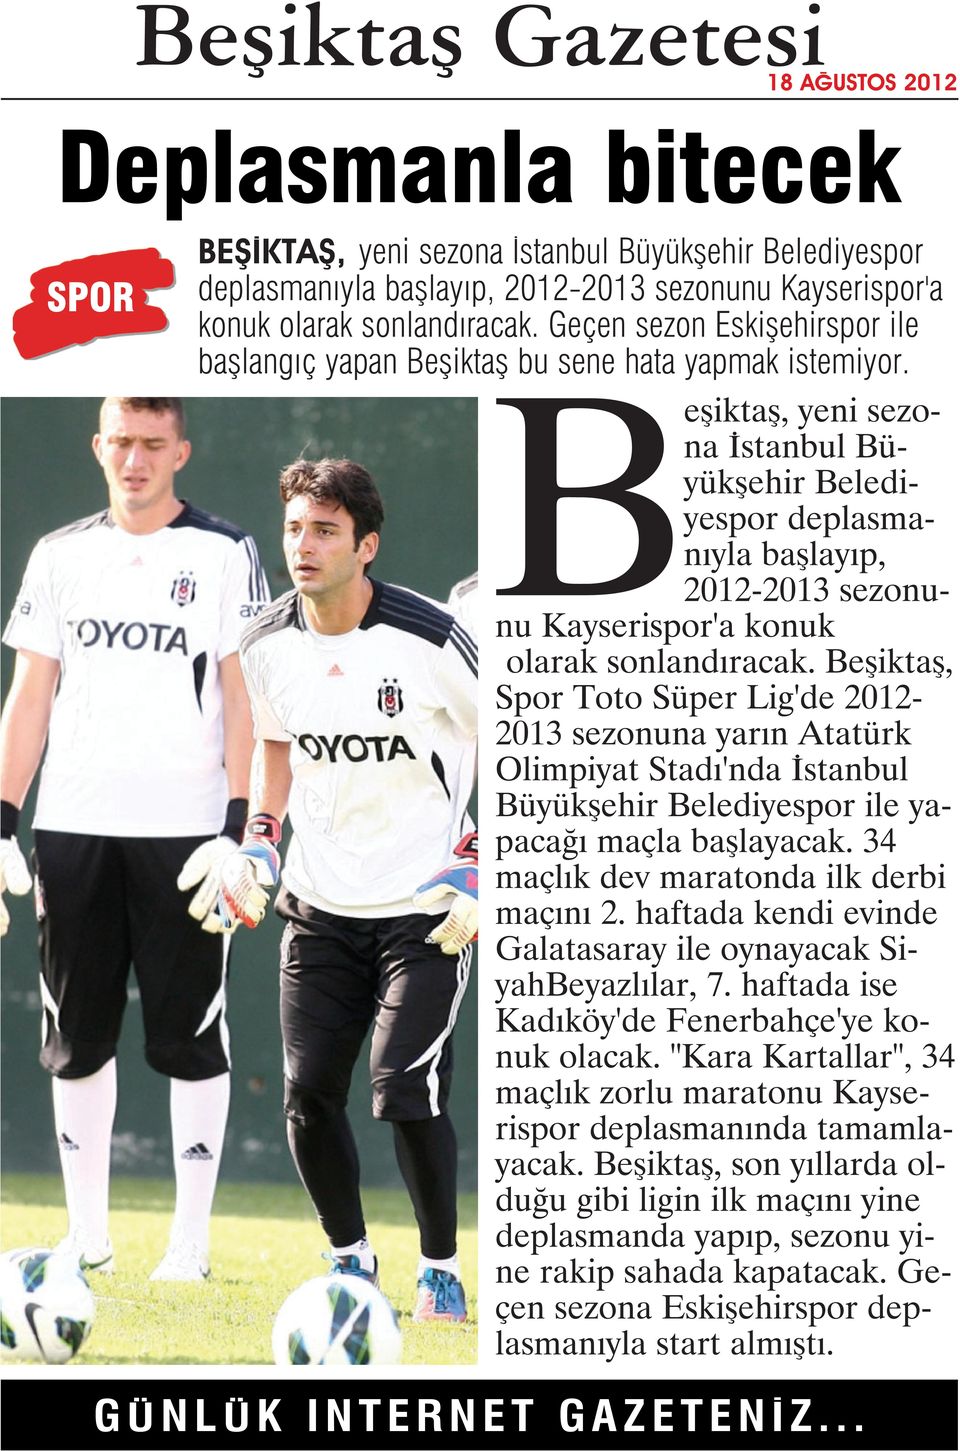 Beşiktaş, yeni sezona İstanbul Büyükşehir Belediyespor deplasmanıyla başlayıp, 2012-2013 sezonunu Kayserispor'a konuk olarak sonlandıracak.